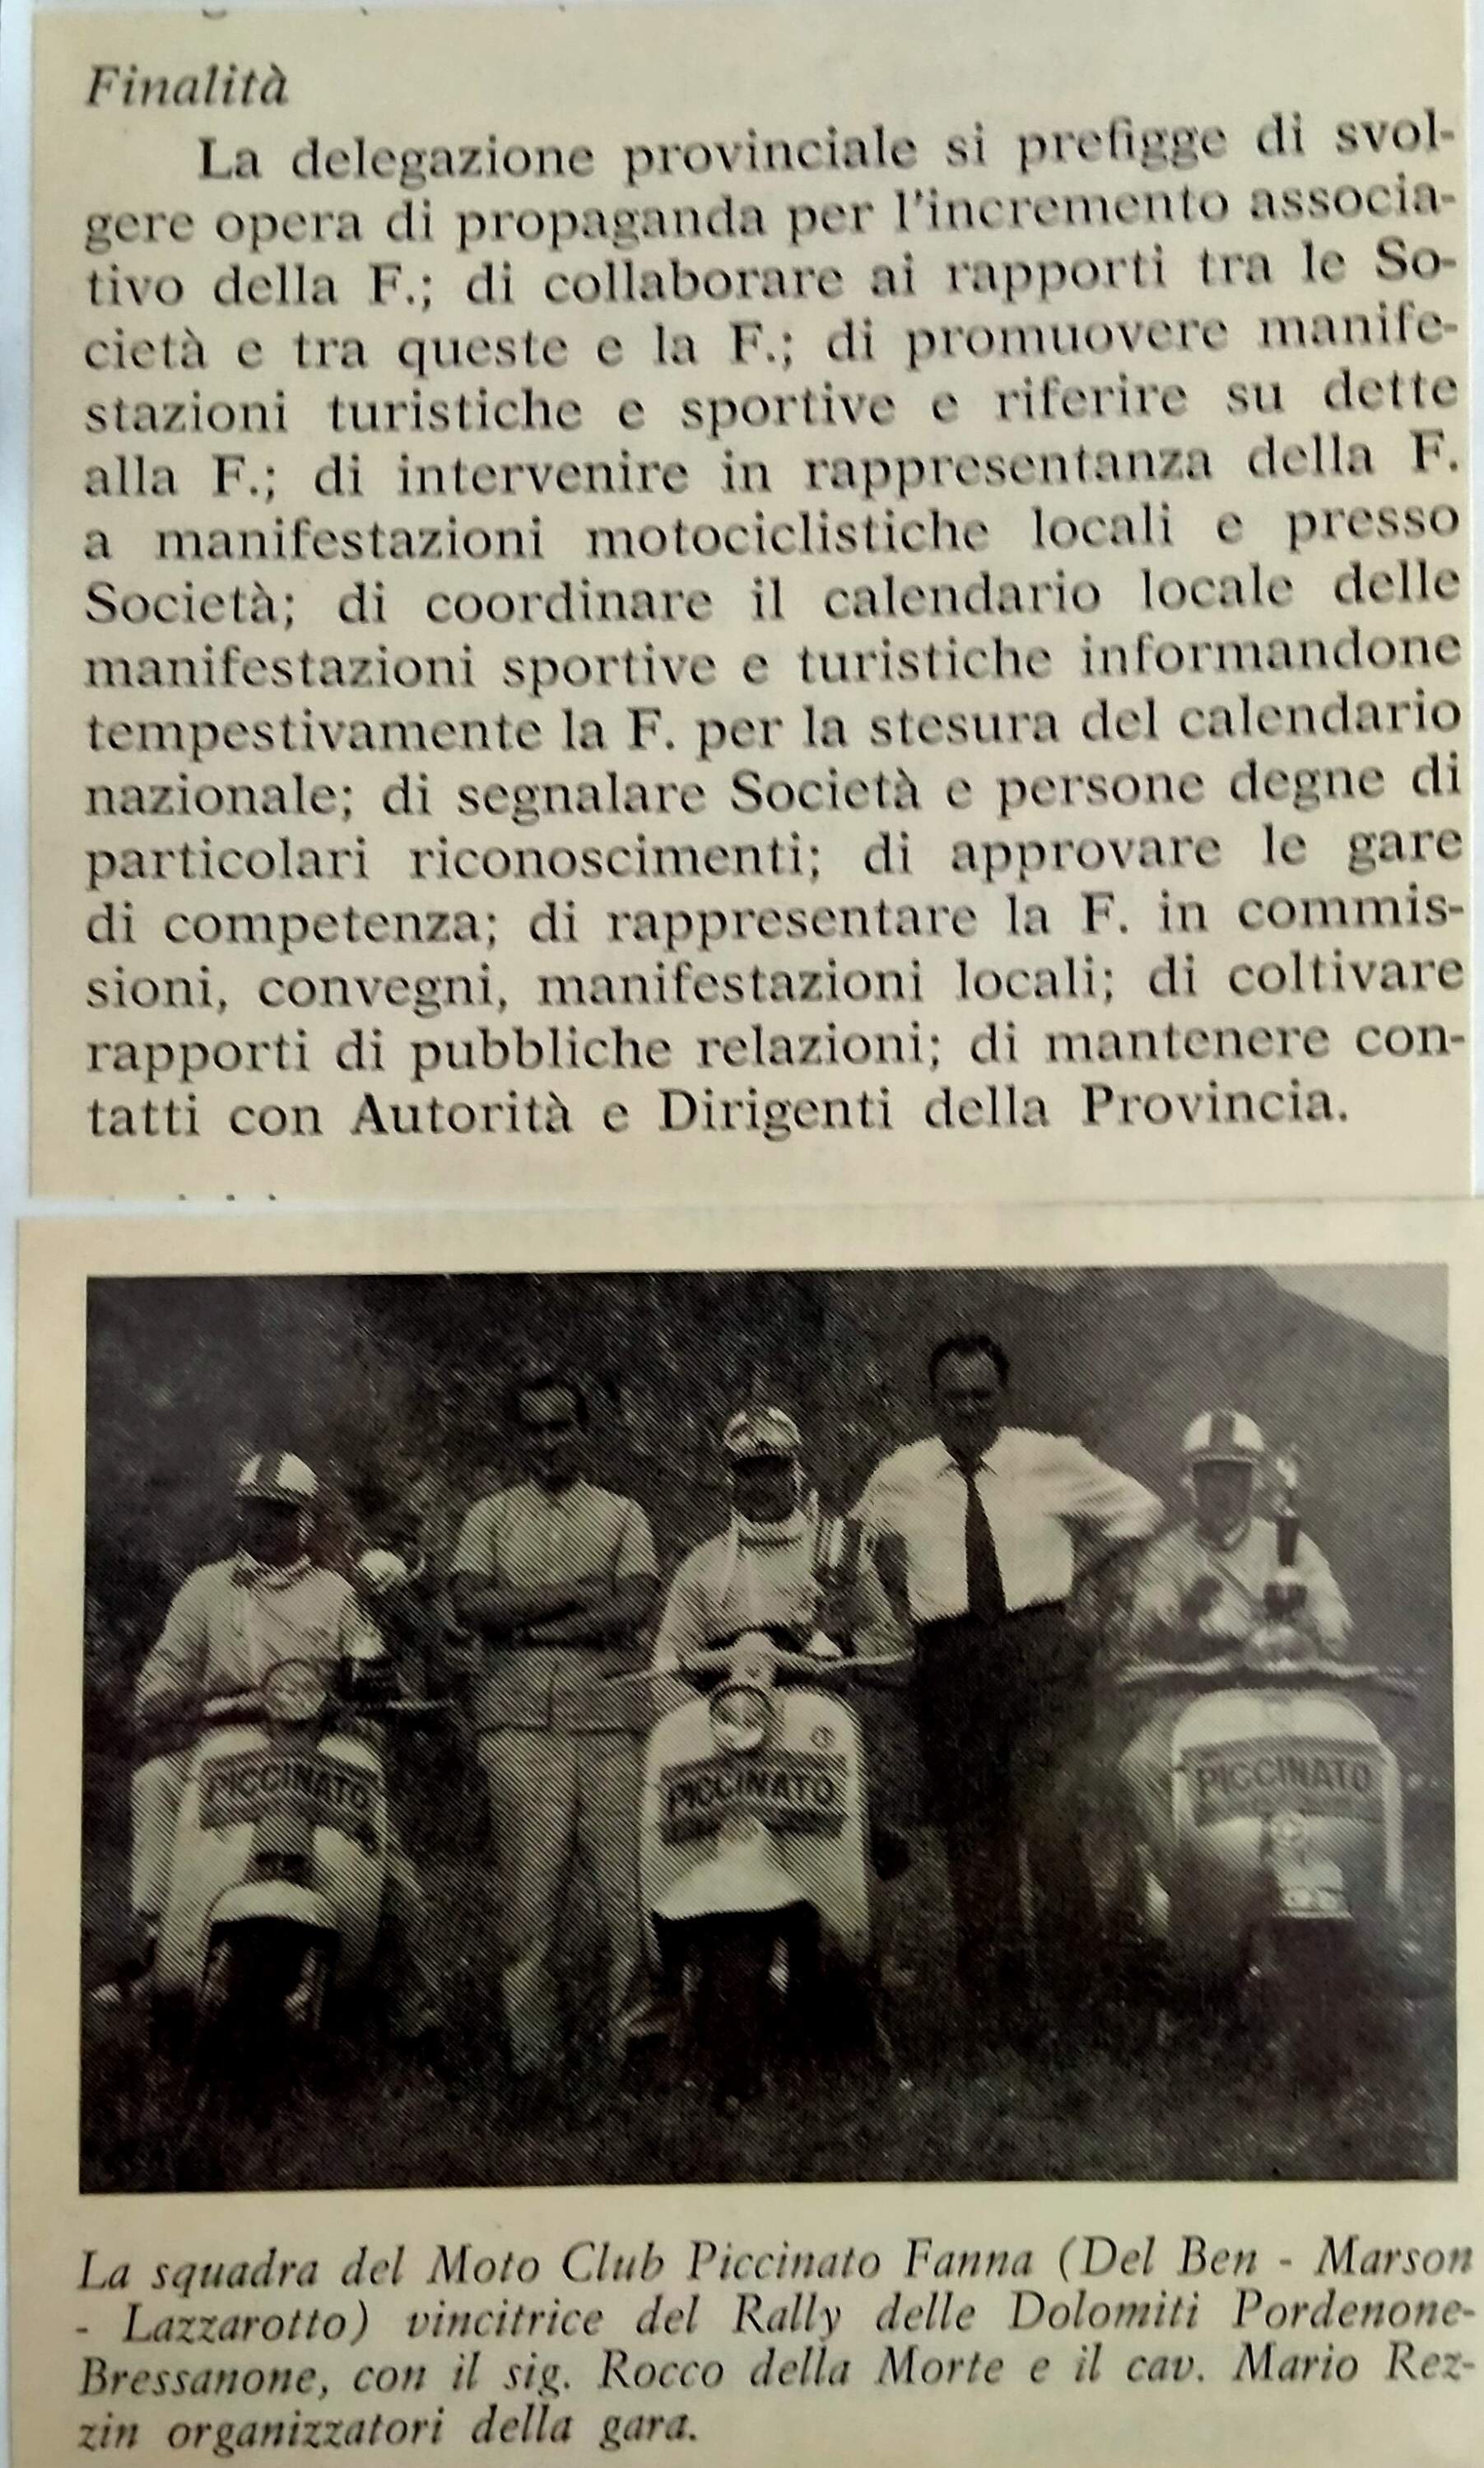 Il primo motoclub fondato a Fanna, il Motoclub Piccinato Fanna